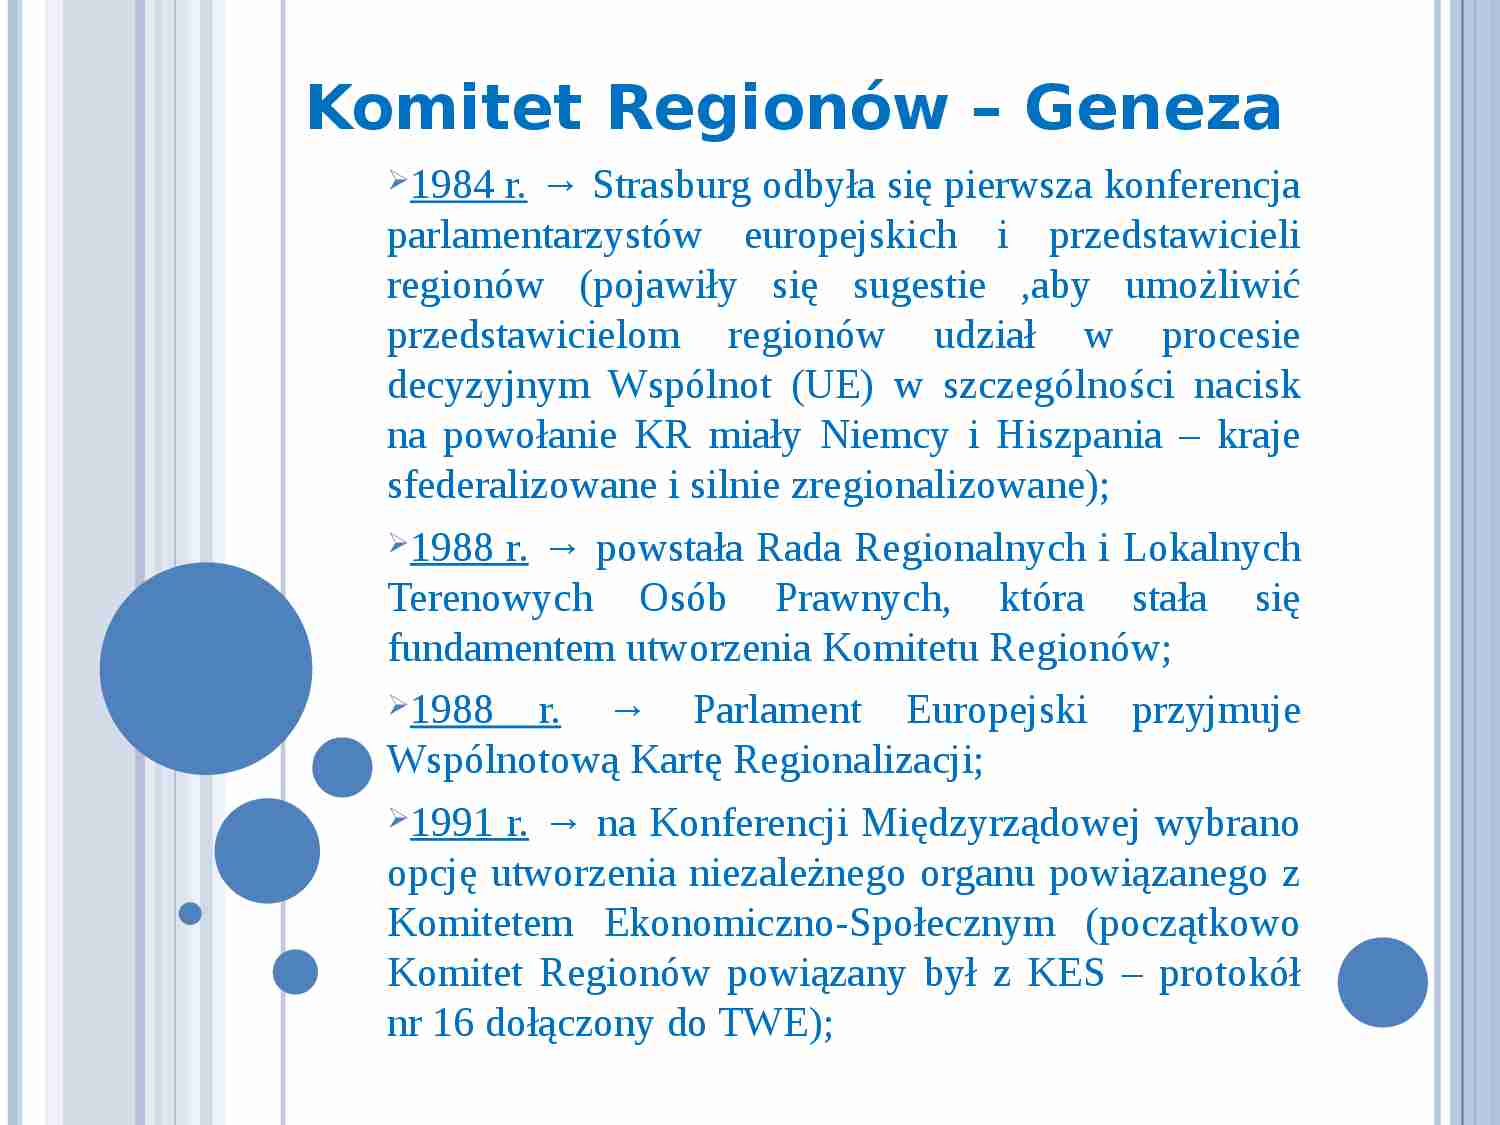 Komitet Regionów- prezentacja - strona 1